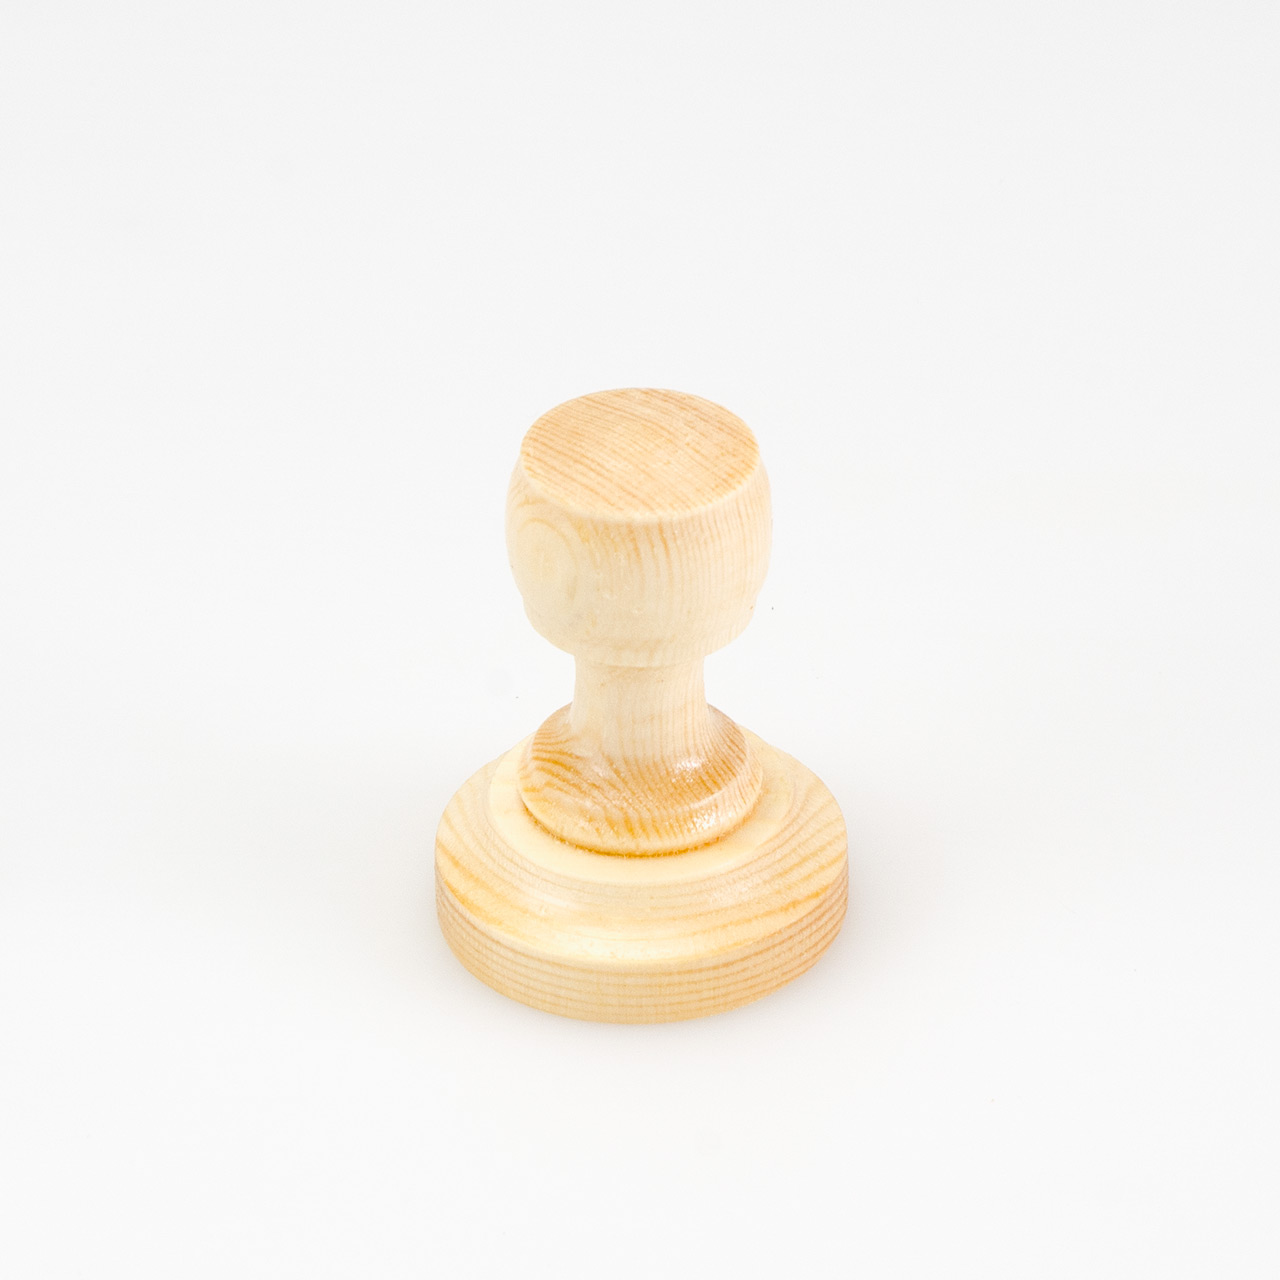 фото Буратино д42 деревянная оснастка для печати д.42 мм сосна grm